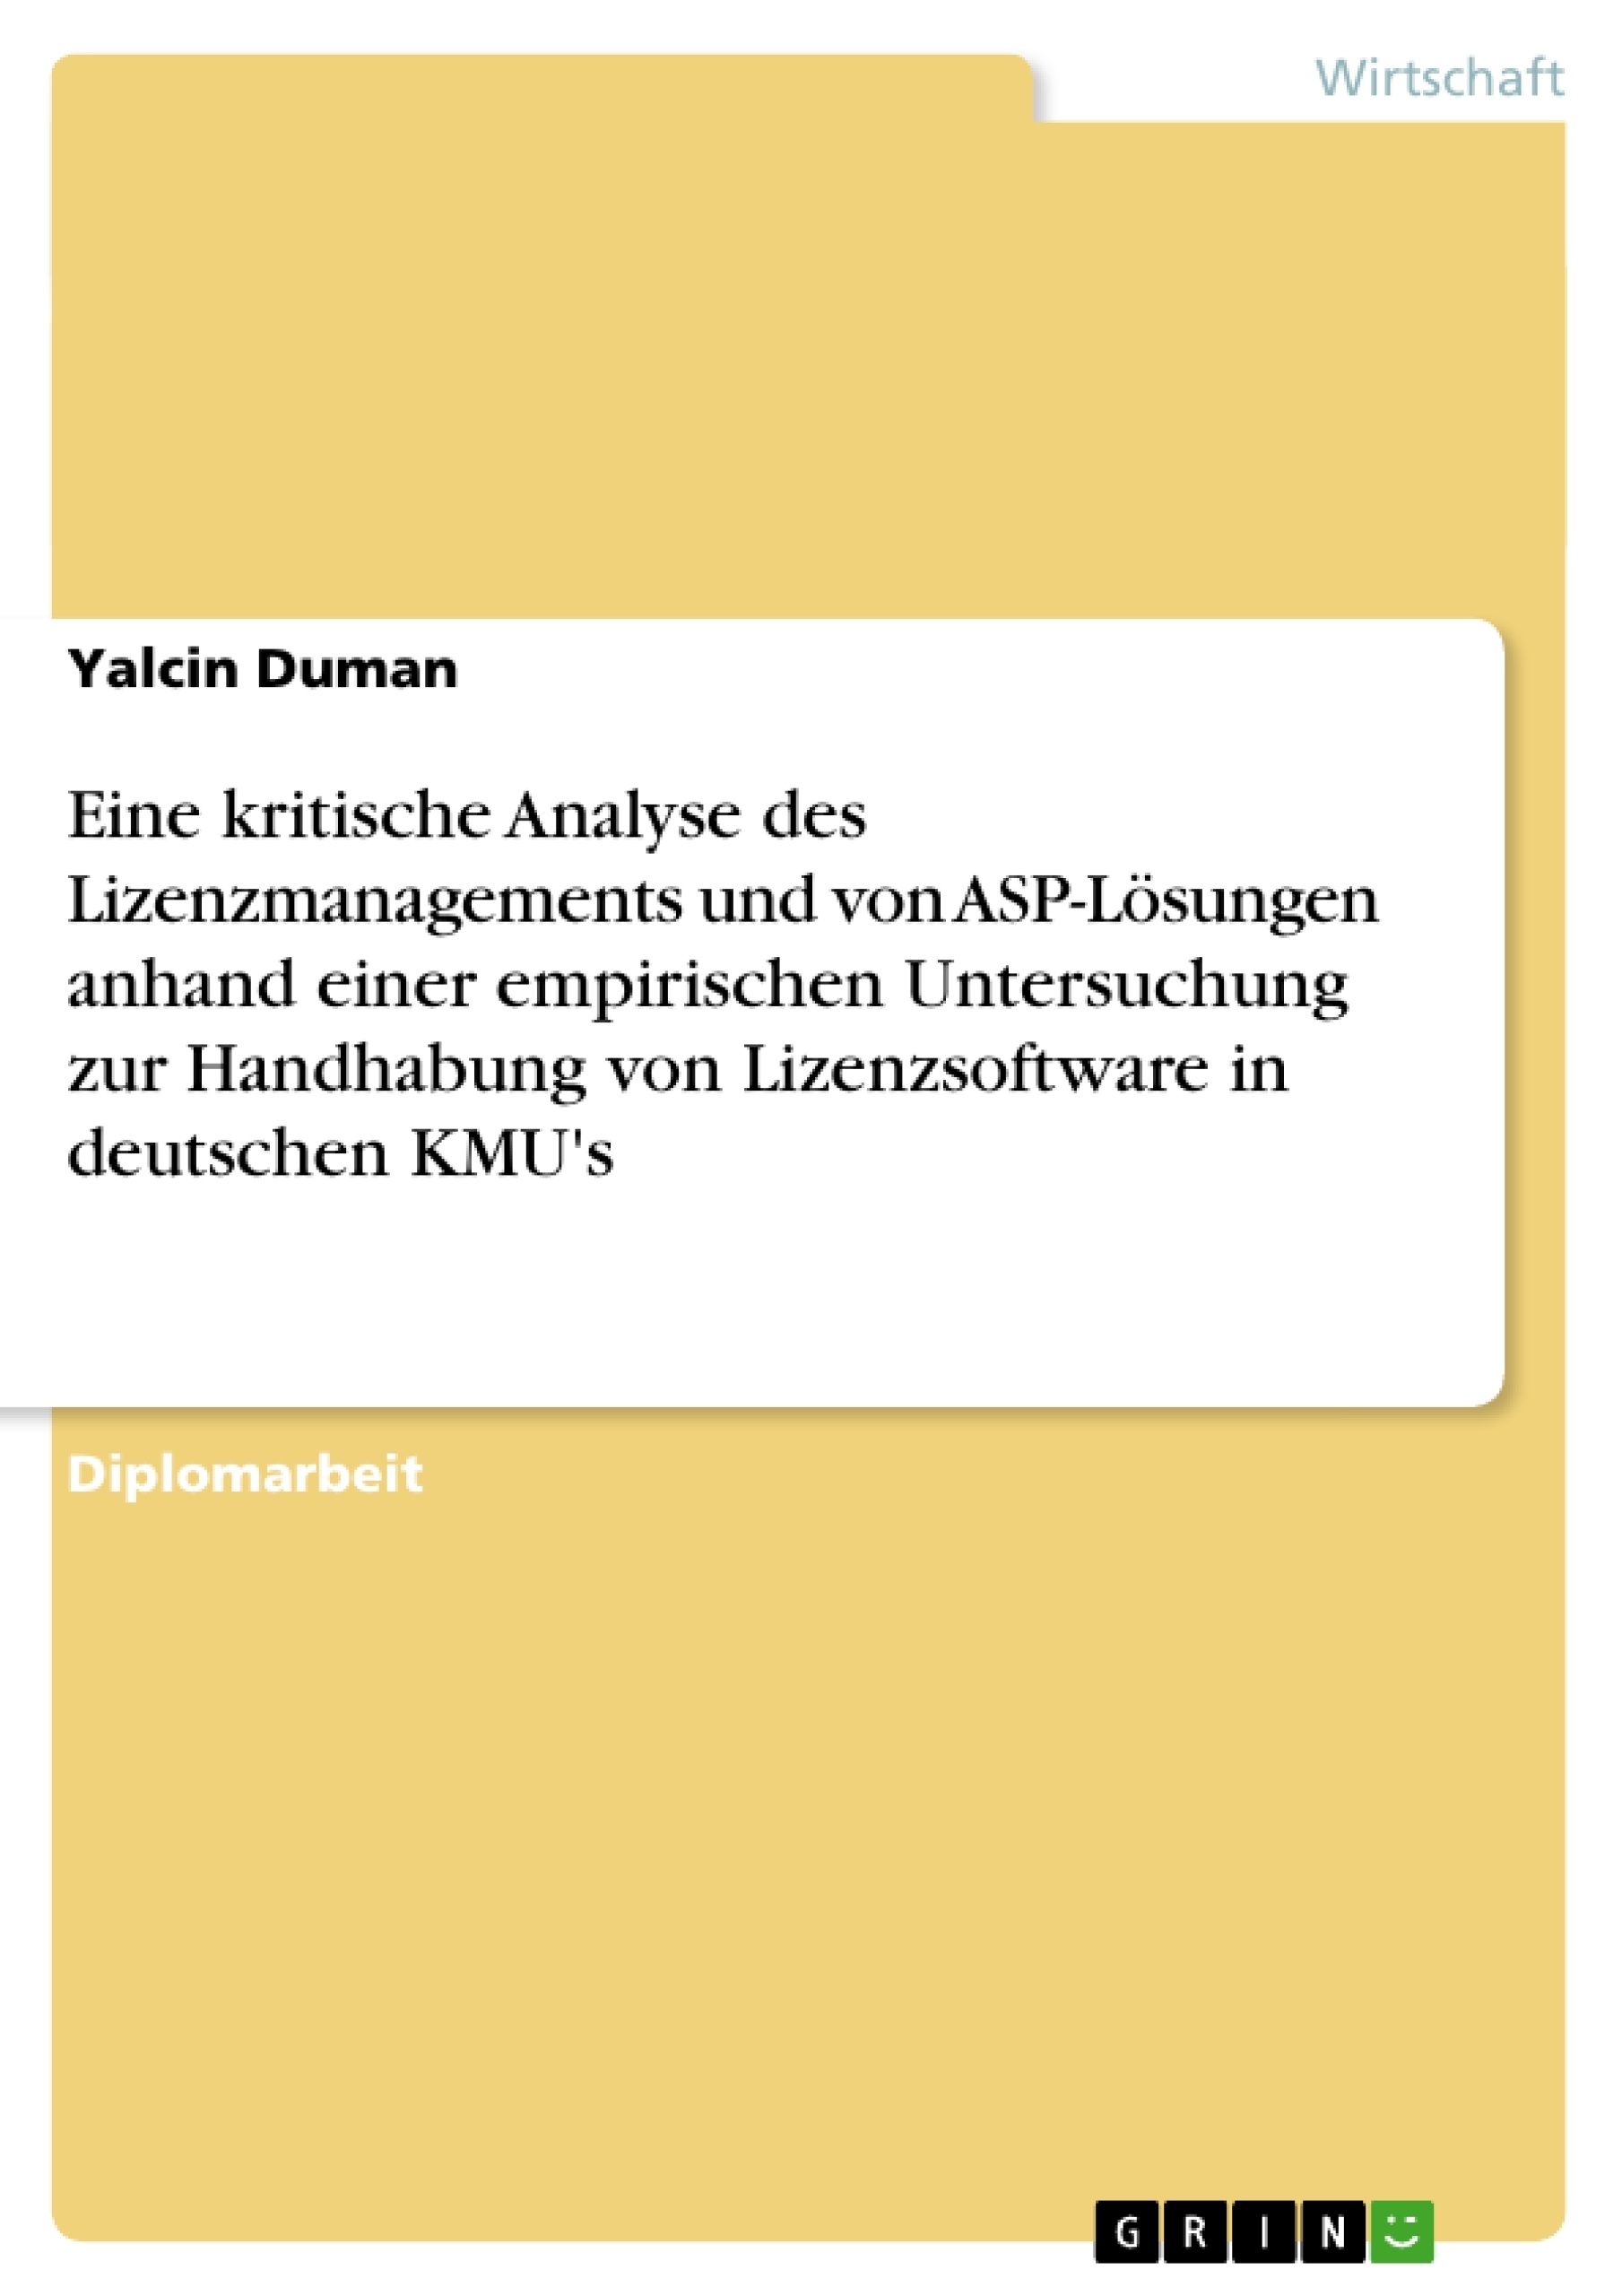 Titre: Eine kritische Analyse des Lizenzmanagements und von ASP-Lösungen anhand einer empirischen Untersuchung zur Handhabung von Lizenzsoftware in deutschen KMU's